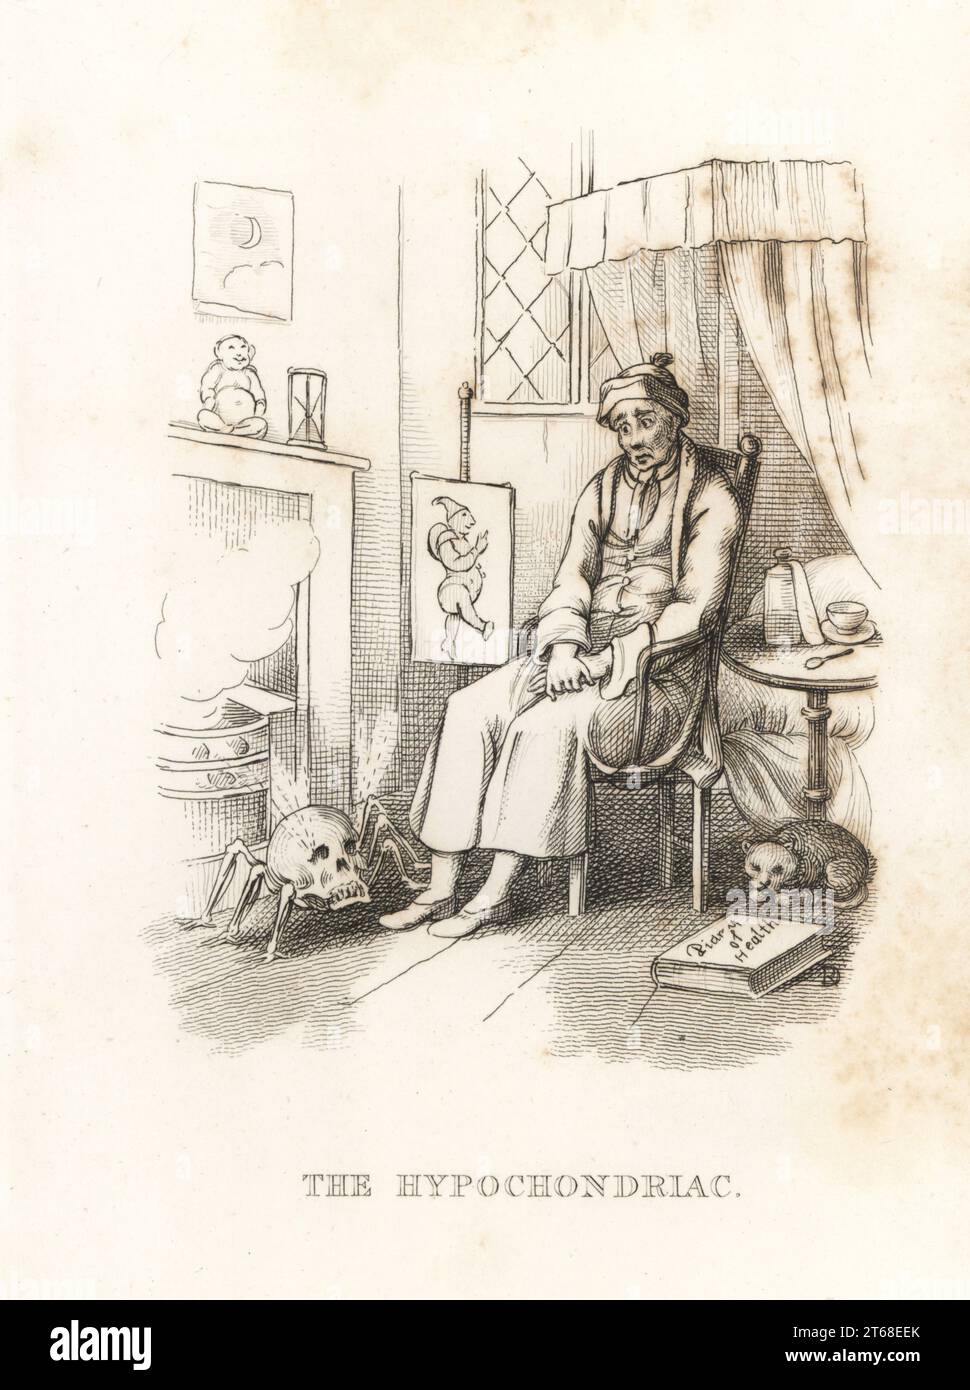 La morte e l'ipocondriaco. La figura della morte, un ragno con un corpo cranico umano, appare ai piedi di un uomo malaticcio che allucina davanti al camino. Una pozione addormentata e un cucchiaio giacciono su un tavolo, e un diario di salute sul pavimento. Illustrazione disegnata e incisa su acciaio da Richard Dagley dalle sue azioni di morte, consistenti in numerose composizioni originali in versi e prosa, J. Andrews, Londra, 1827. Dagley (1761-1841) è stato un pittore, illustratore e incisore inglese. Foto Stock